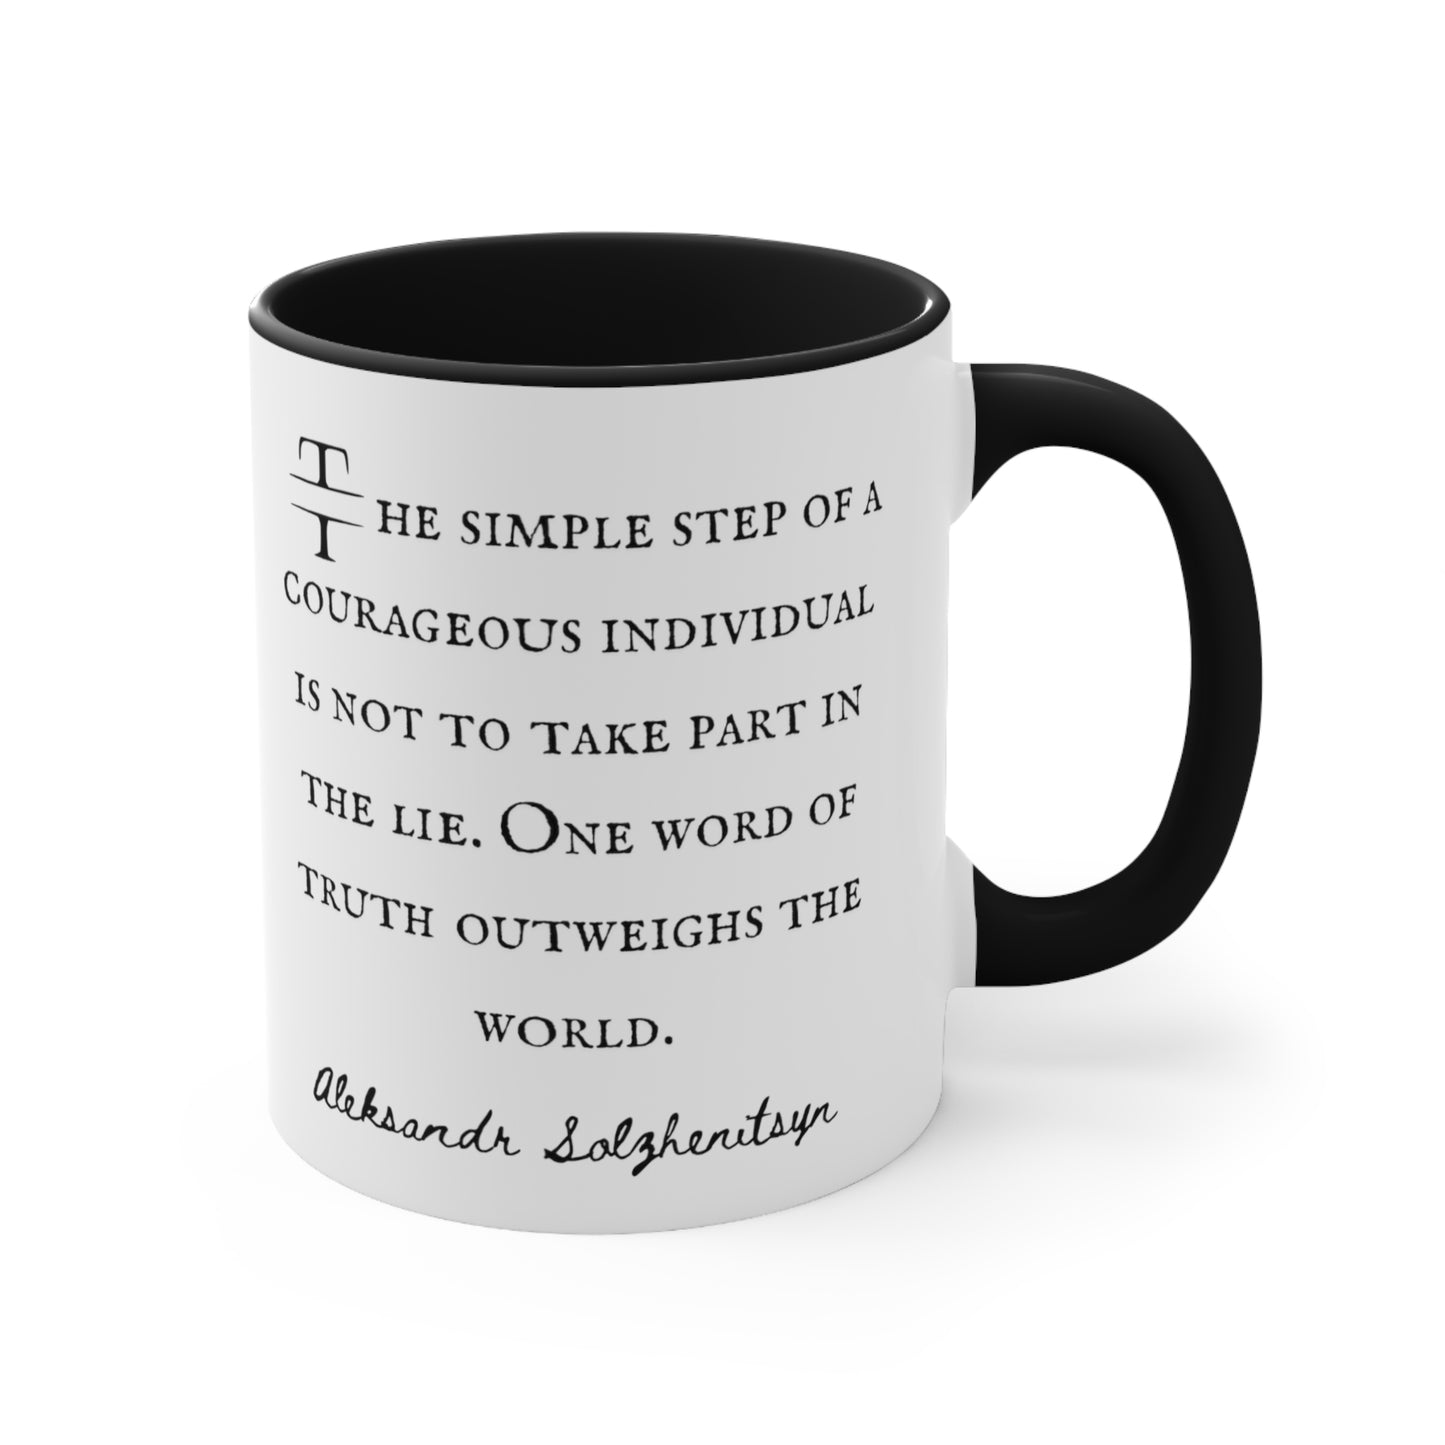 Aleksandr Solzhenitsyn Coffee Mug